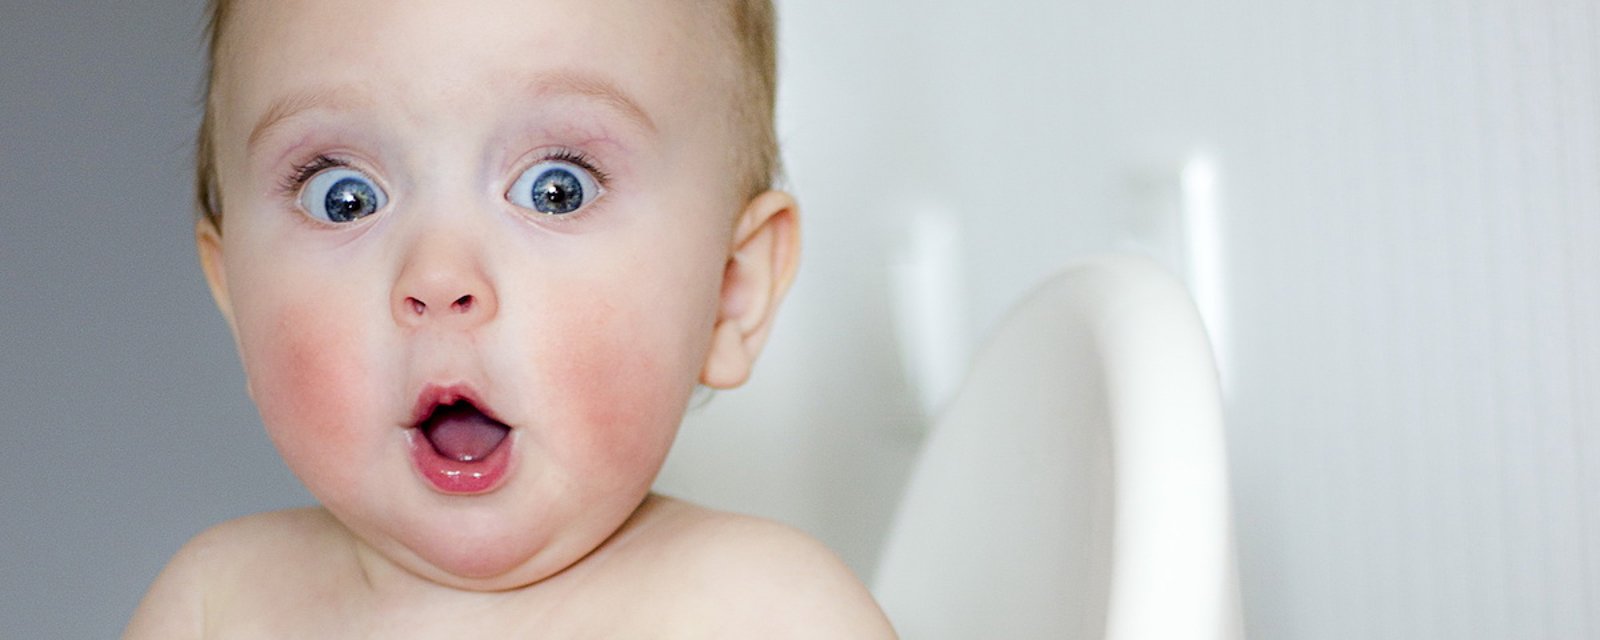 Selon la science, le bébé de la famille est le plus drôle!